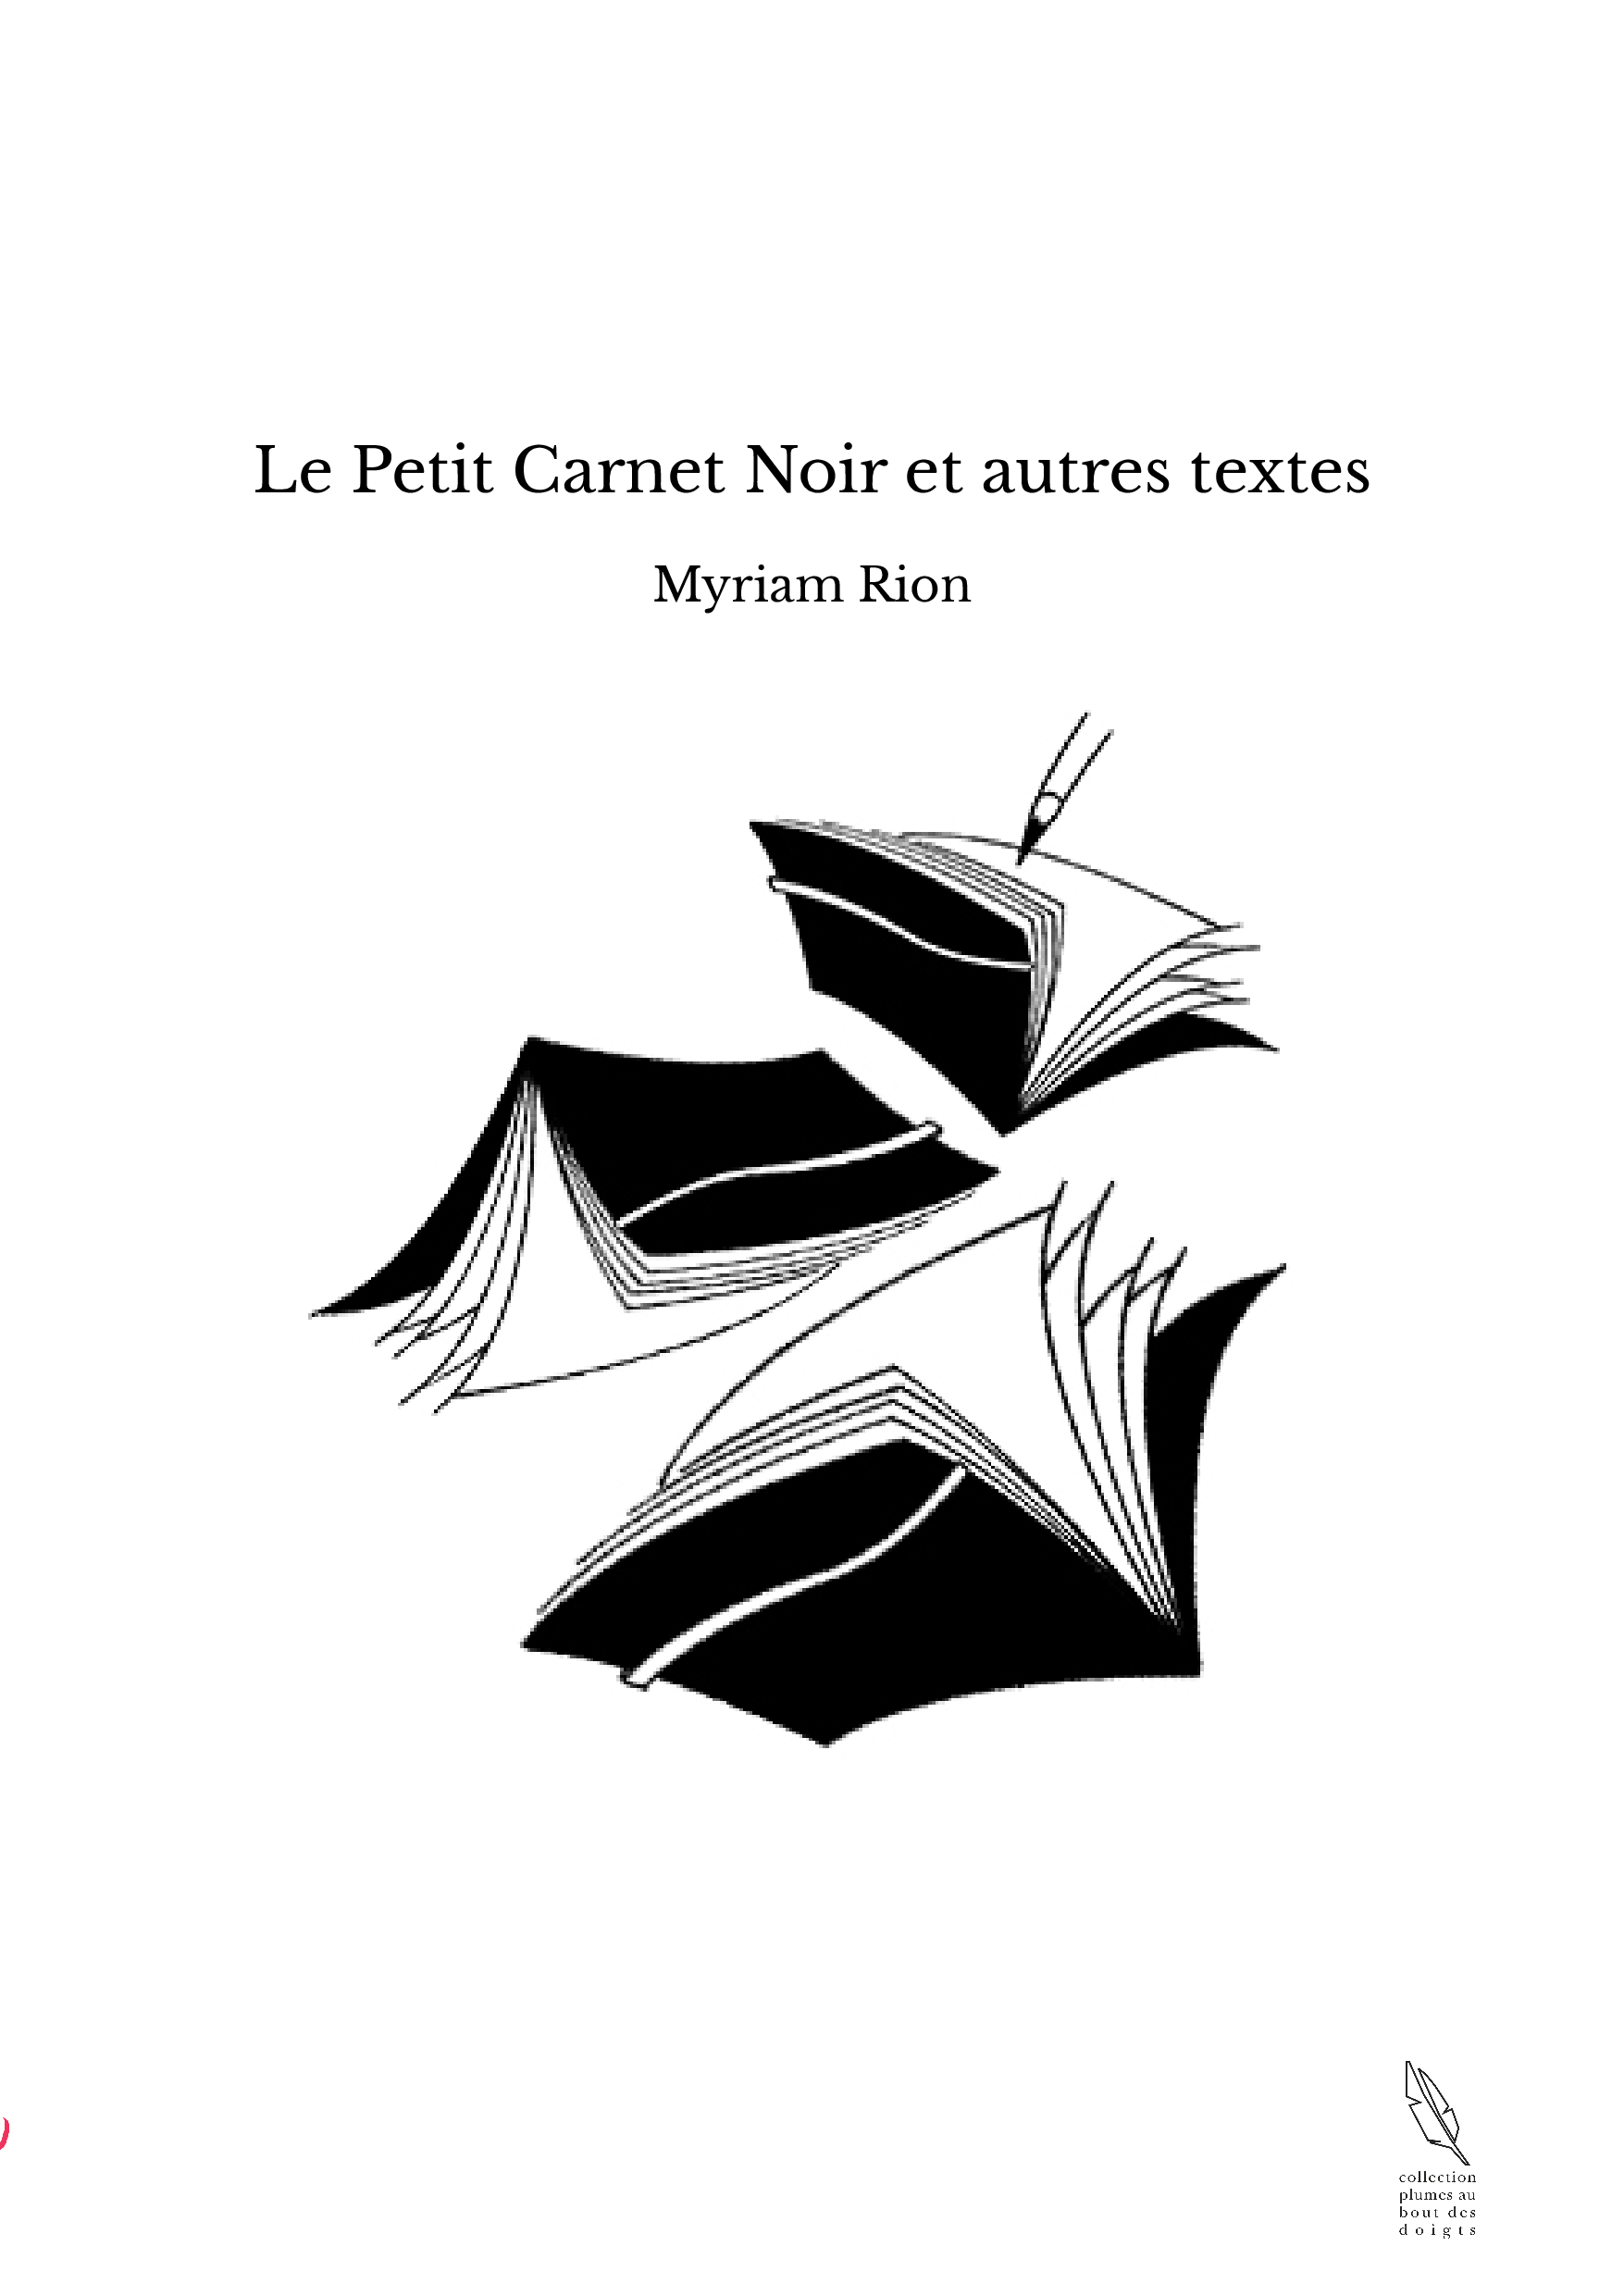 Le Petit Carnet Noir et autres textes - Myriam Rion